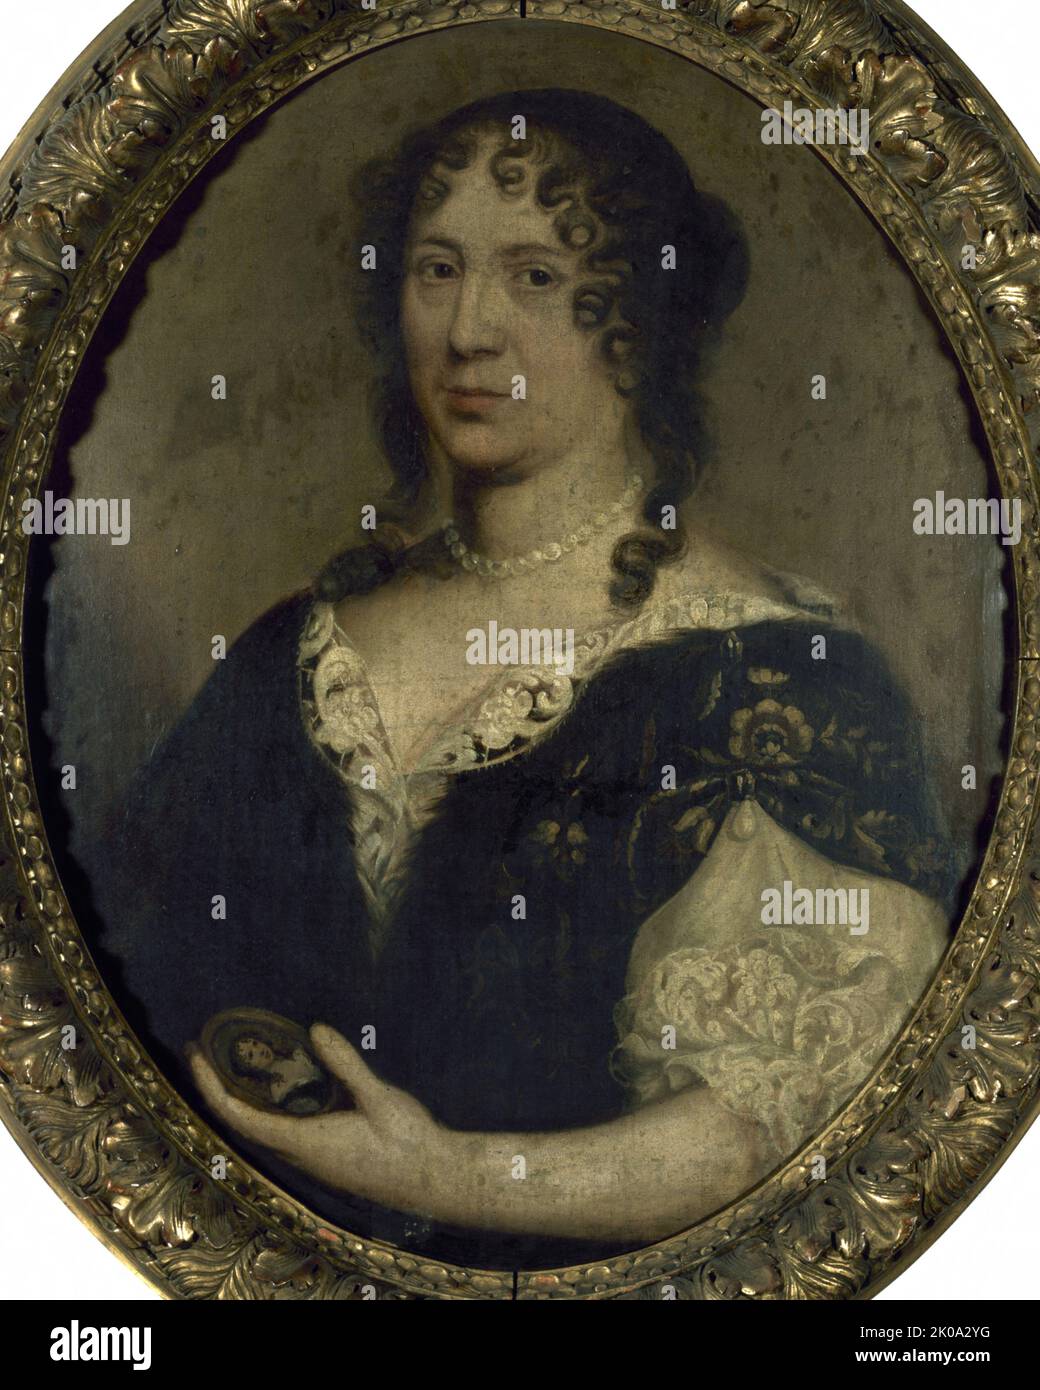 Portrait de femme, autrefois identifi&#xe9;e comme de S&#xe9;vign&#xe9;, c1680. Foto Stock